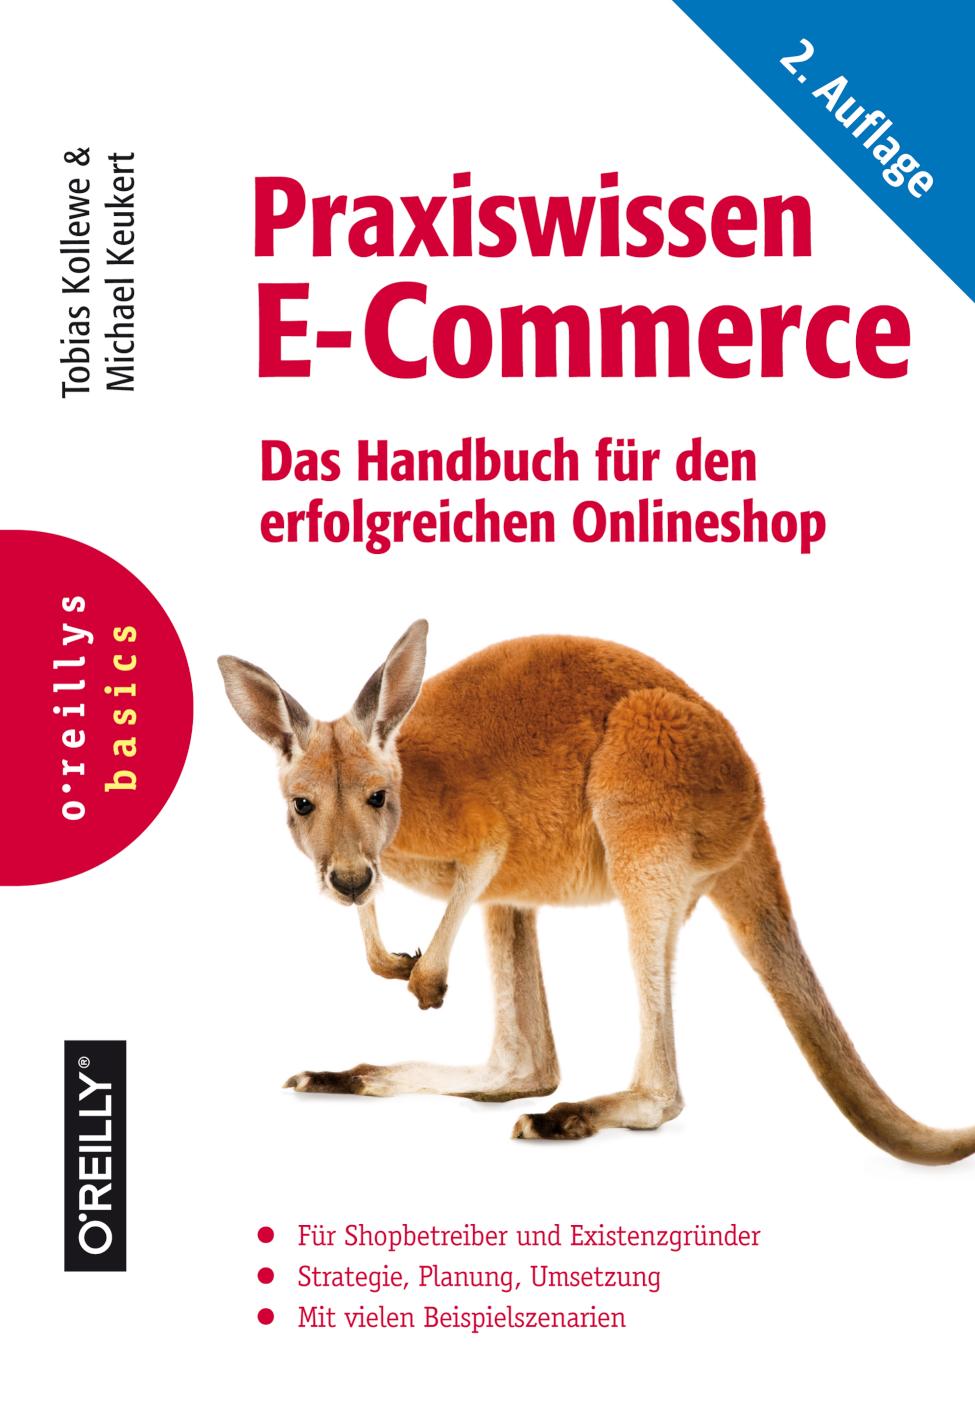 Praxiswissen E-Commerce Das Handbuch für den erfolgreichen Onlineshop